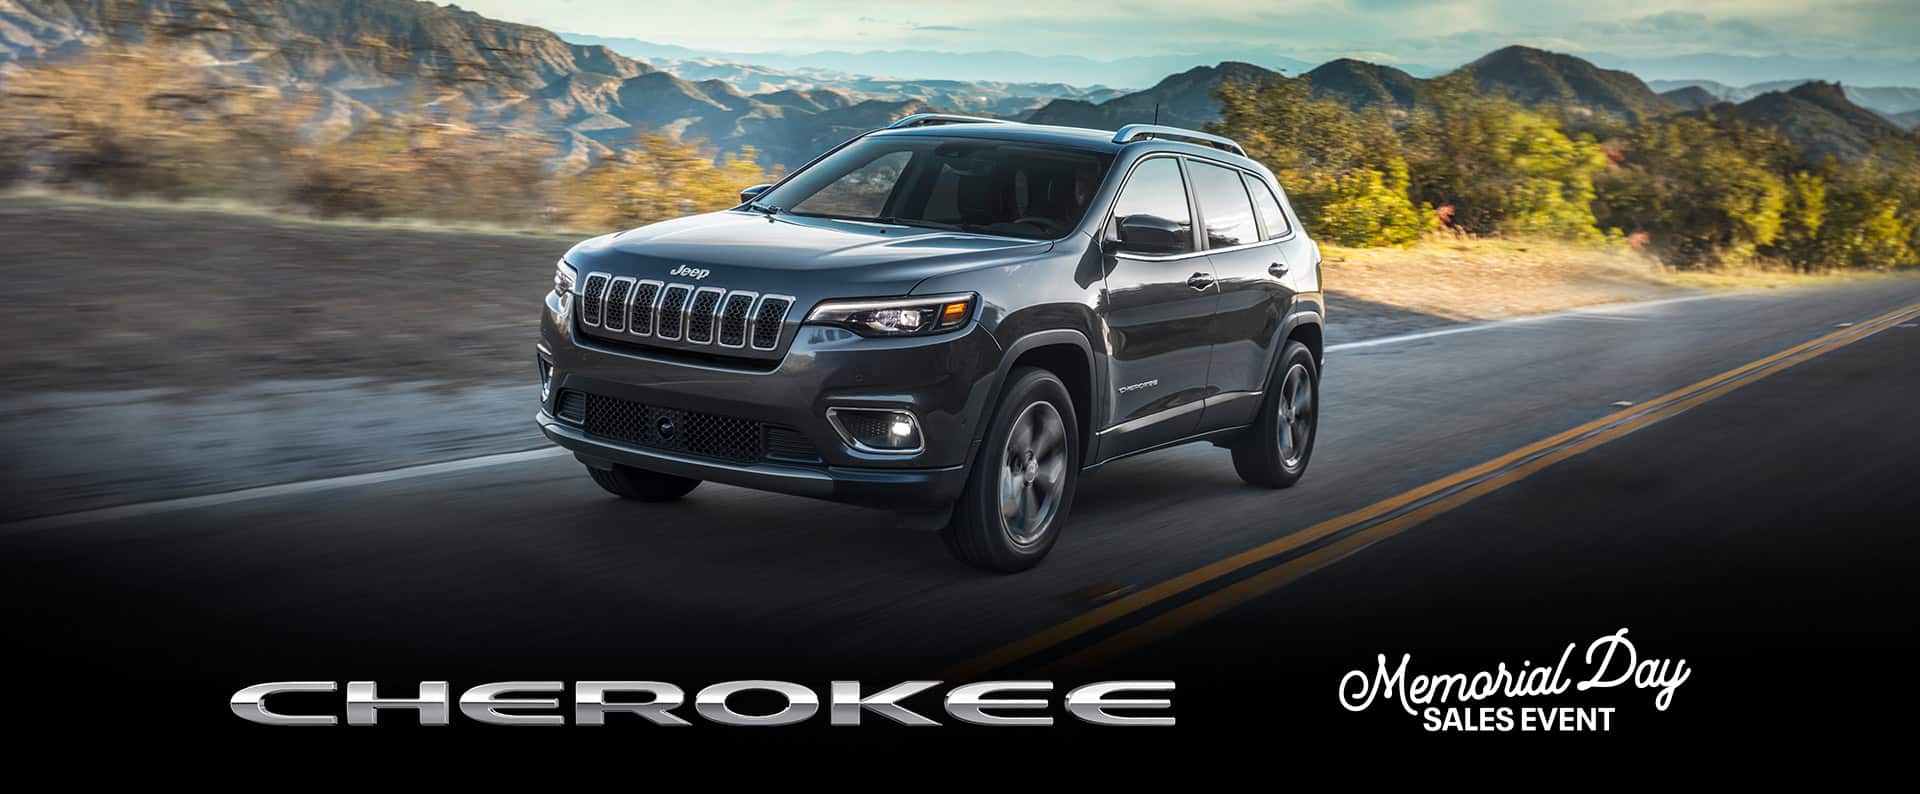 Un Jeep Cherokee Limited 2022 andando por una carretera abierta con montañas a la distancia. Logo del evento de ventas por el Día de los Caídos.